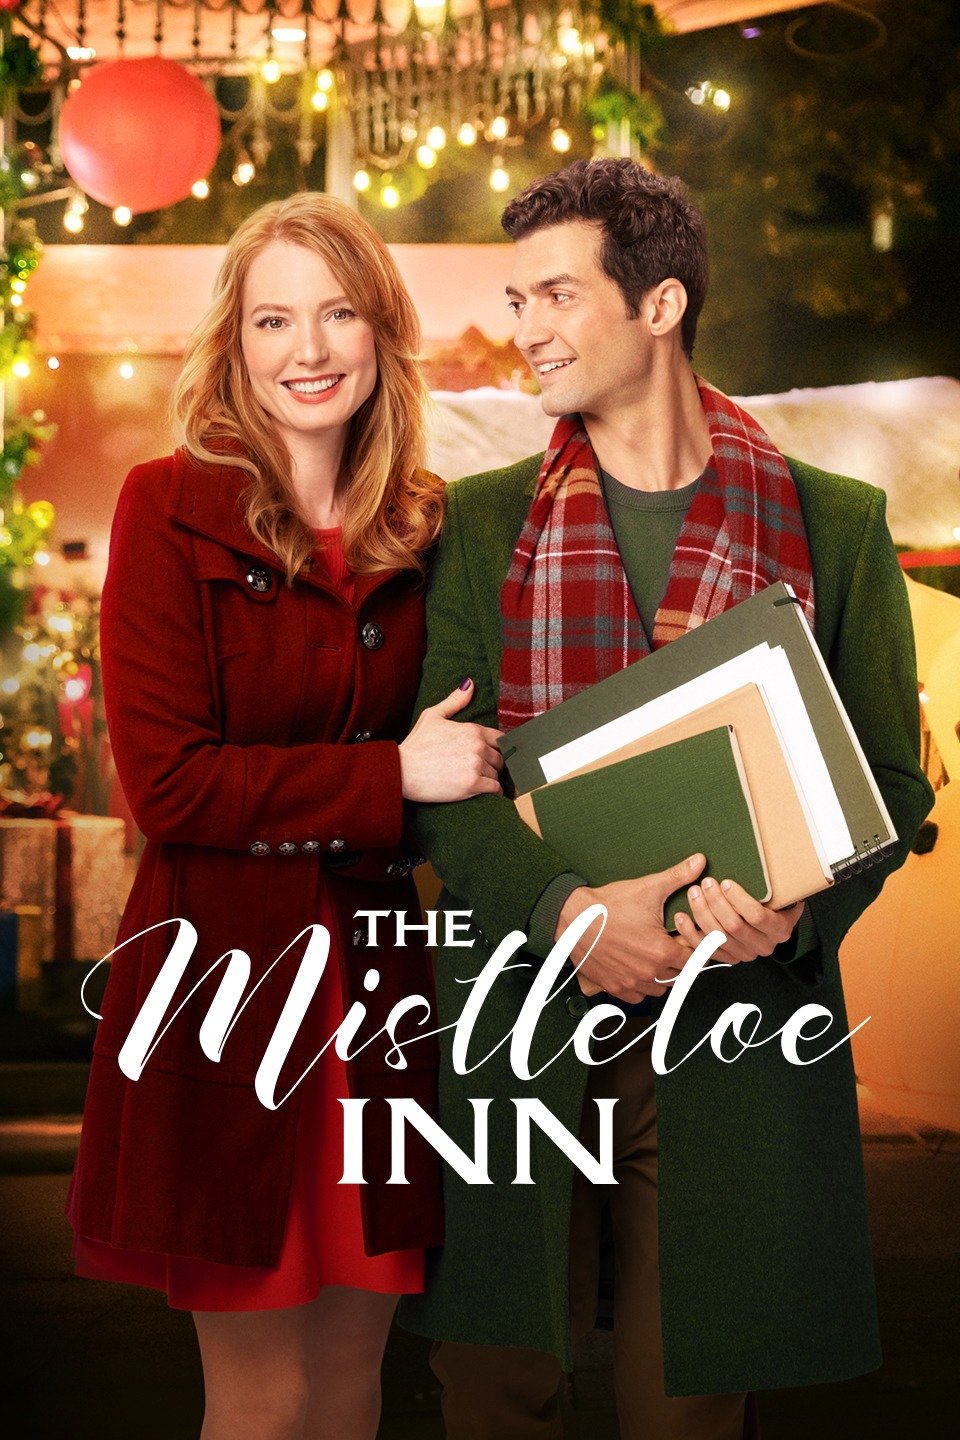 Nonton film The Mistletoe Inn layarkaca21 indoxx1 ganool online streaming terbaru